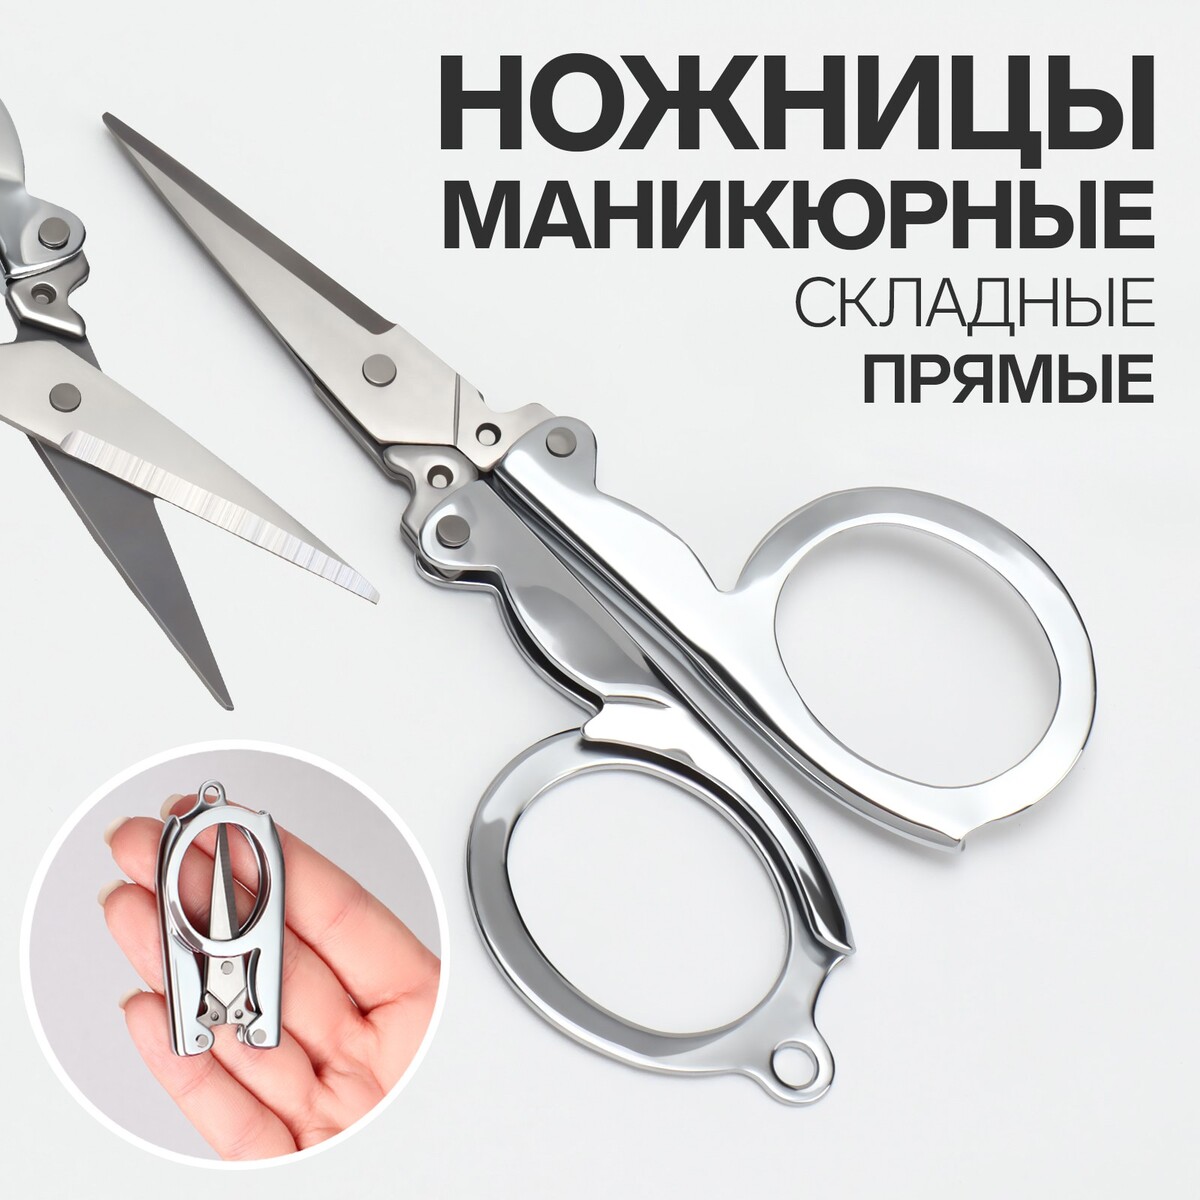 Ножницы маникюрные, складные, прямые, 10,5 см, цвет серебристый ножницы безопасные прямые 9 см серебристый